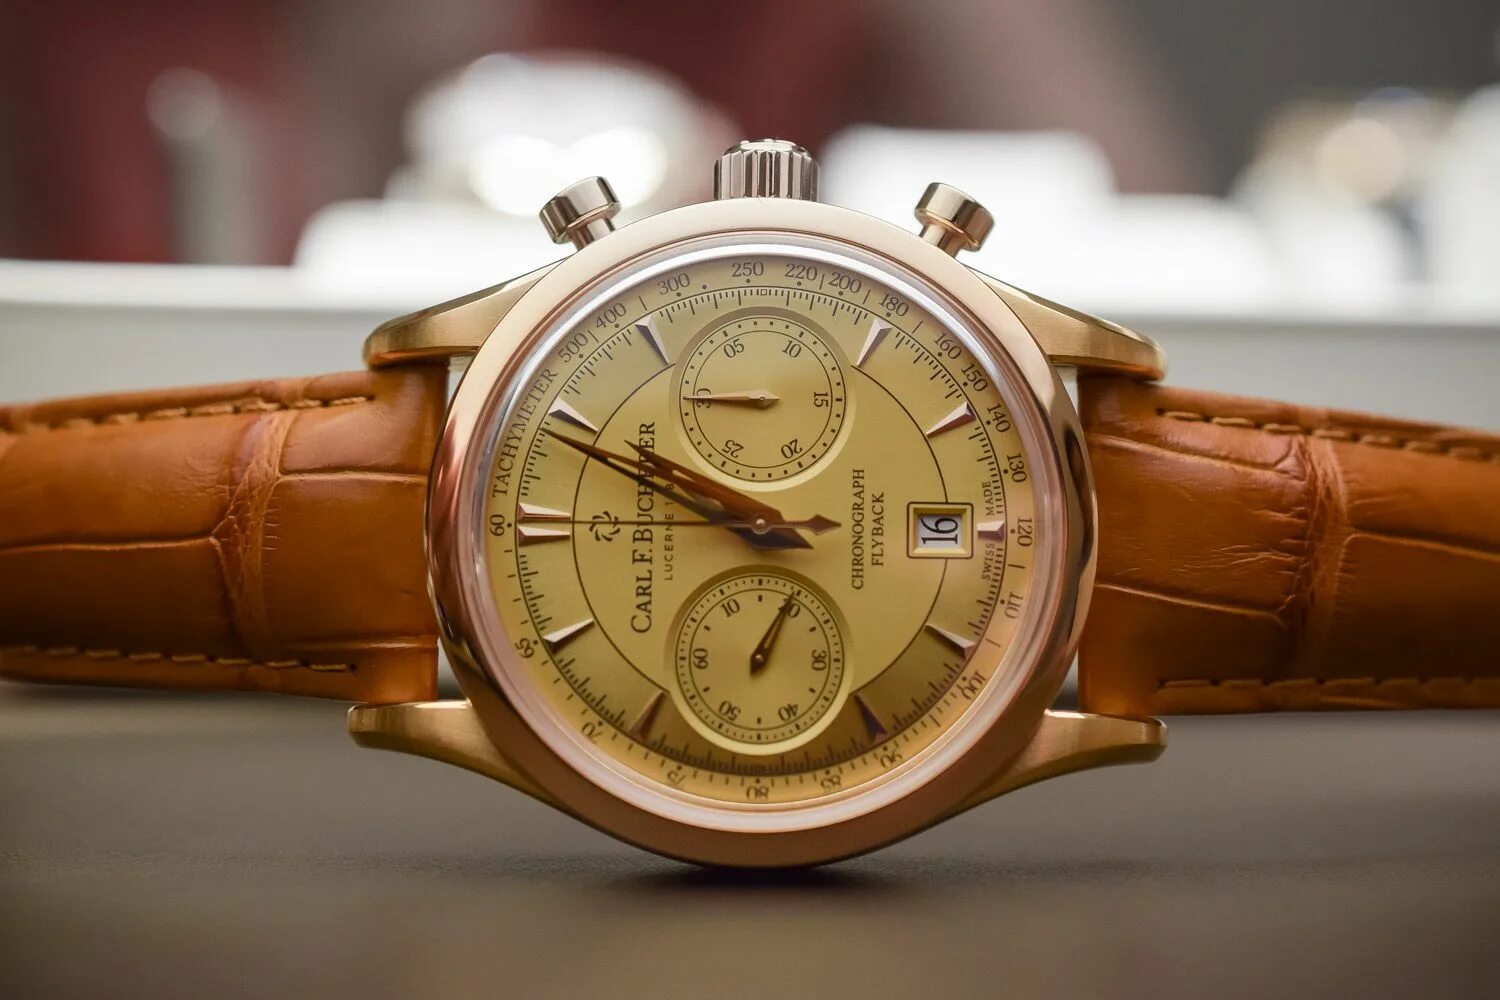 Мужские наручные часы Carl f. Bucherer. Часы Bucherer мужские золотые. Б у швейцарских часов